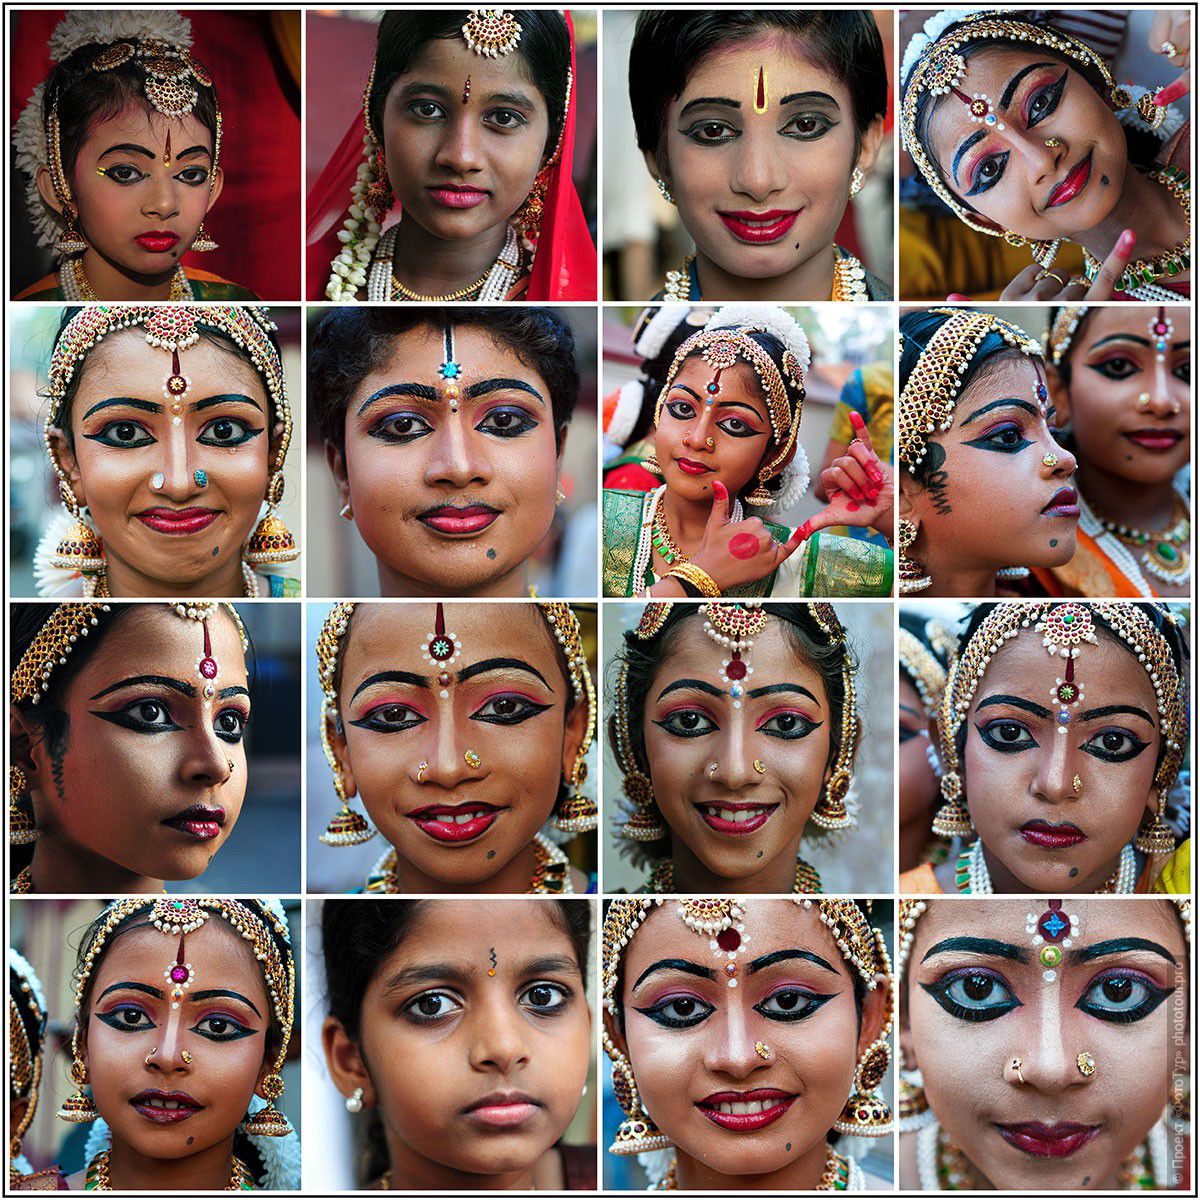 Фотография юных танцоров на празднике Шри Махашиваратри, 20.02.2012г., Тривандрум. Фототур в Кералу.